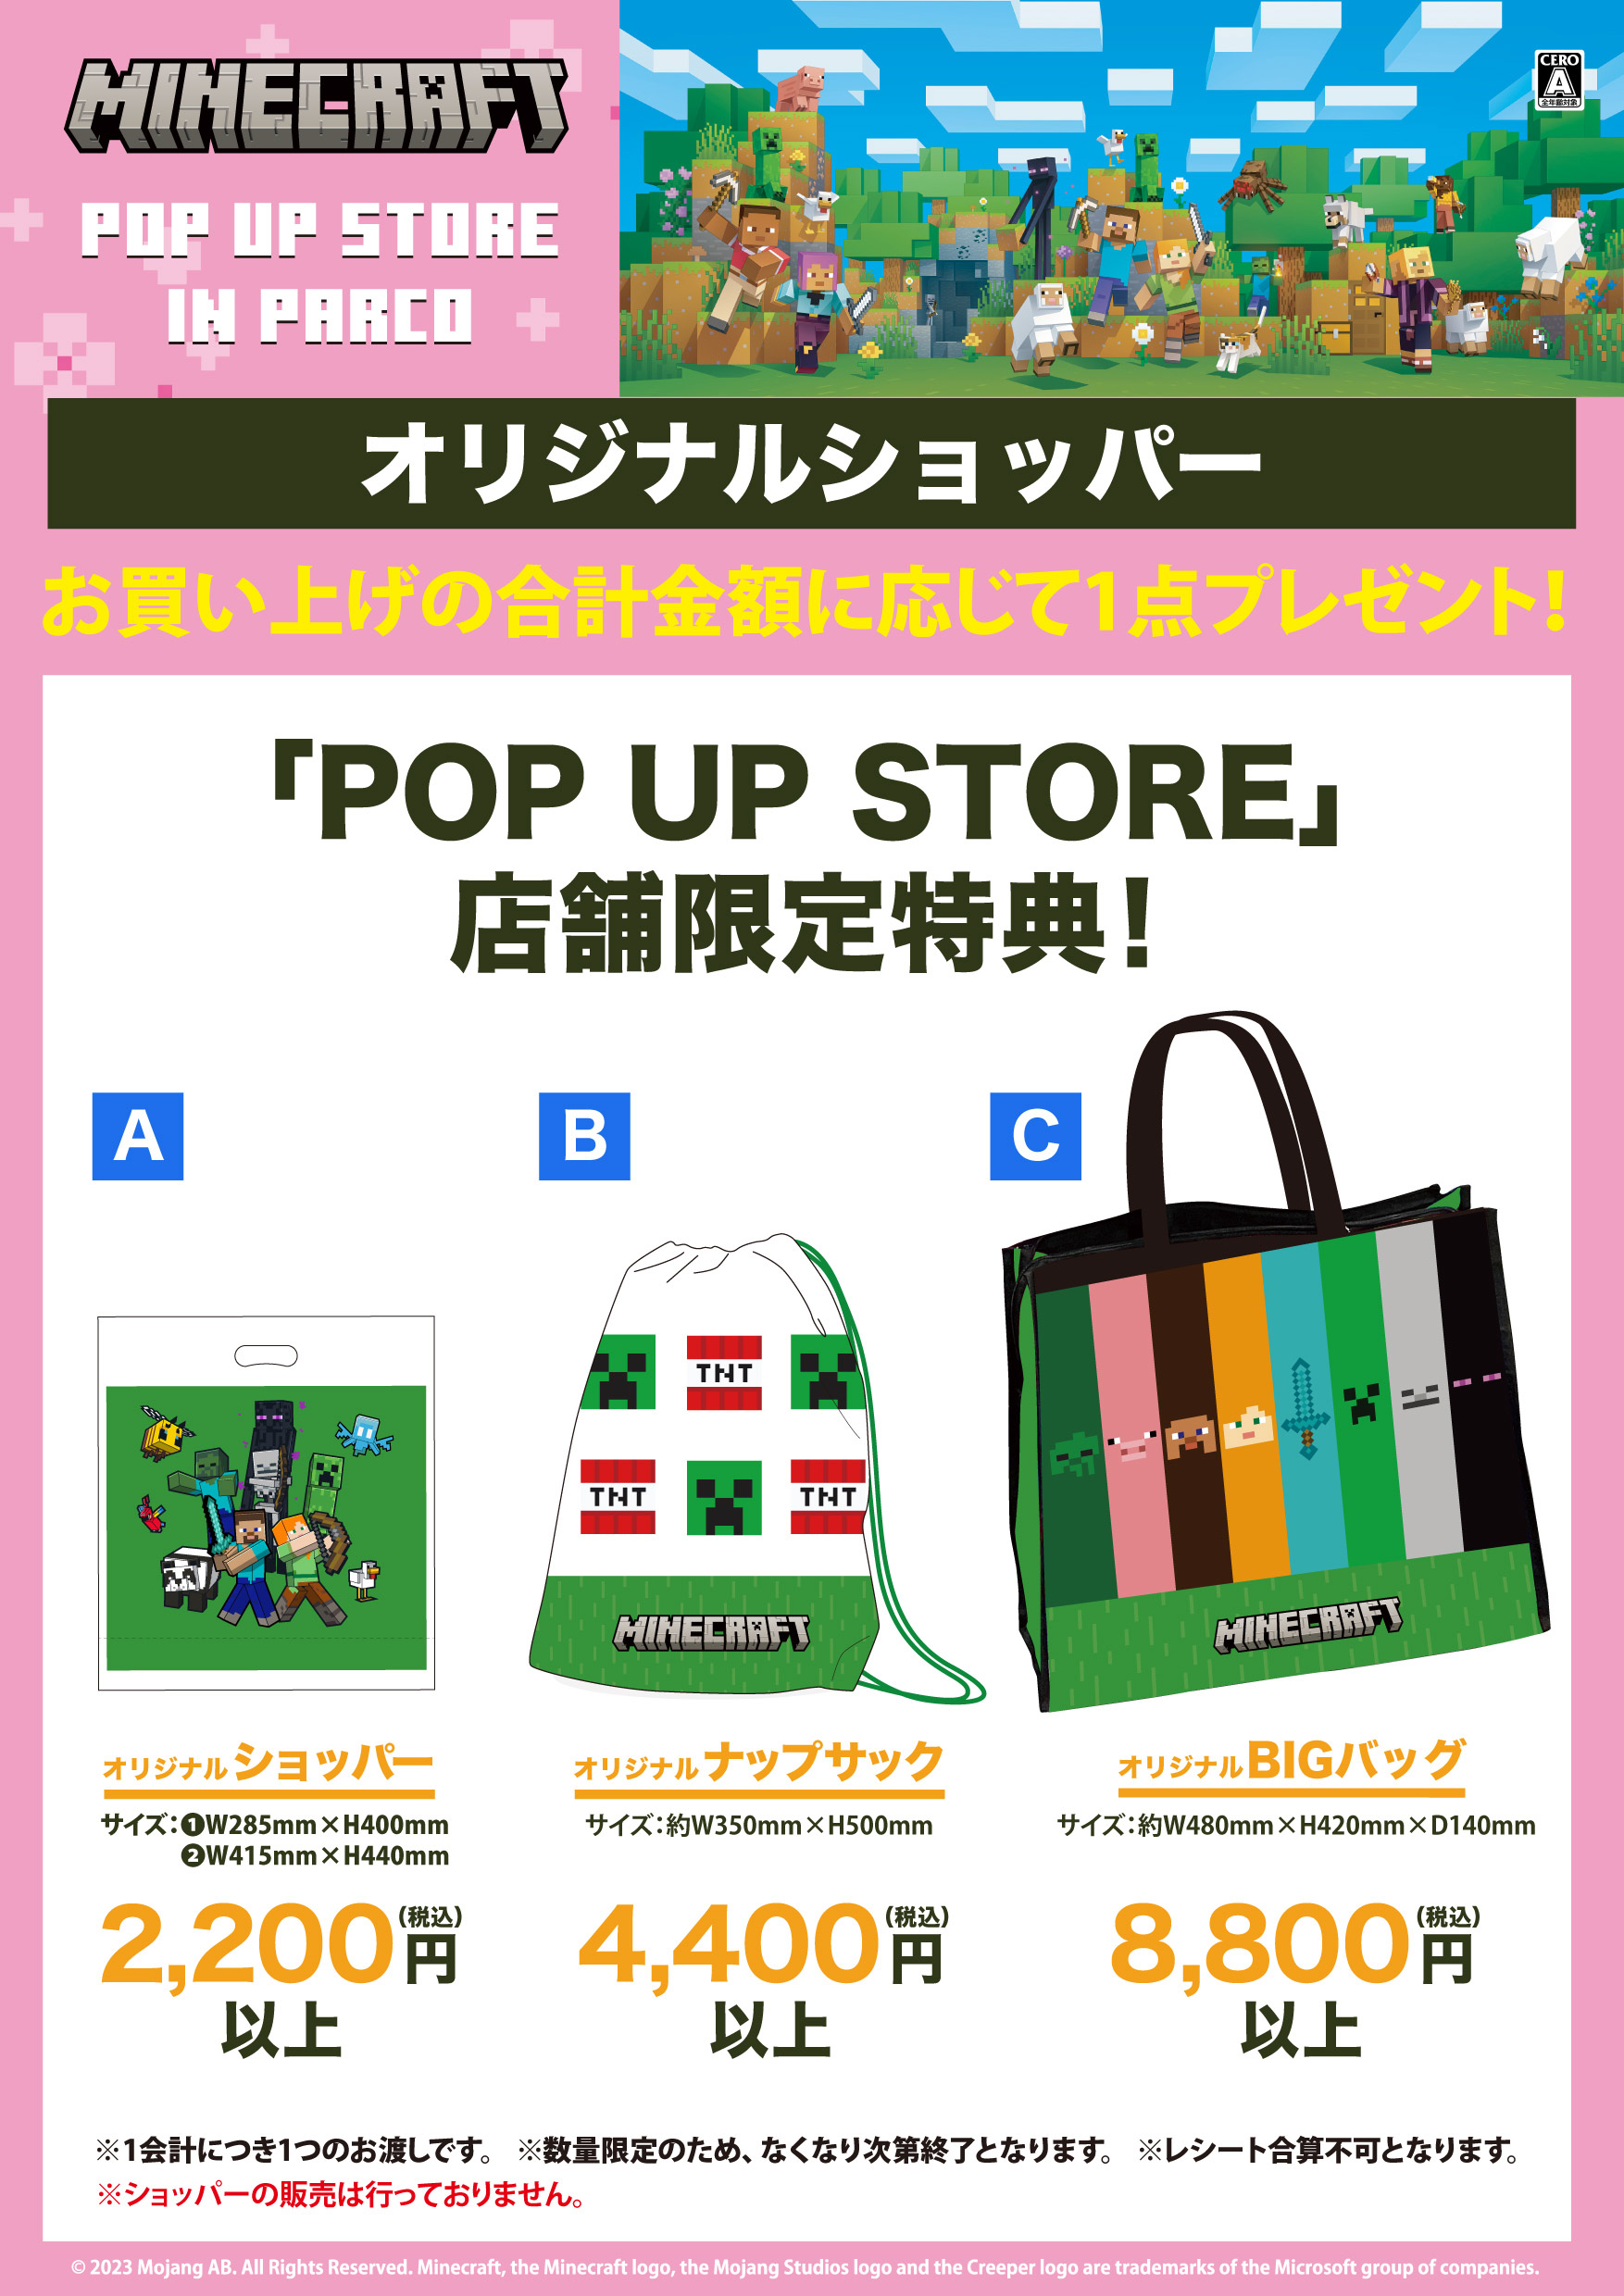 MINECRAFT POP UP STORE IN PARCO/ MINECRAFT POP UP STORE 開催店舗